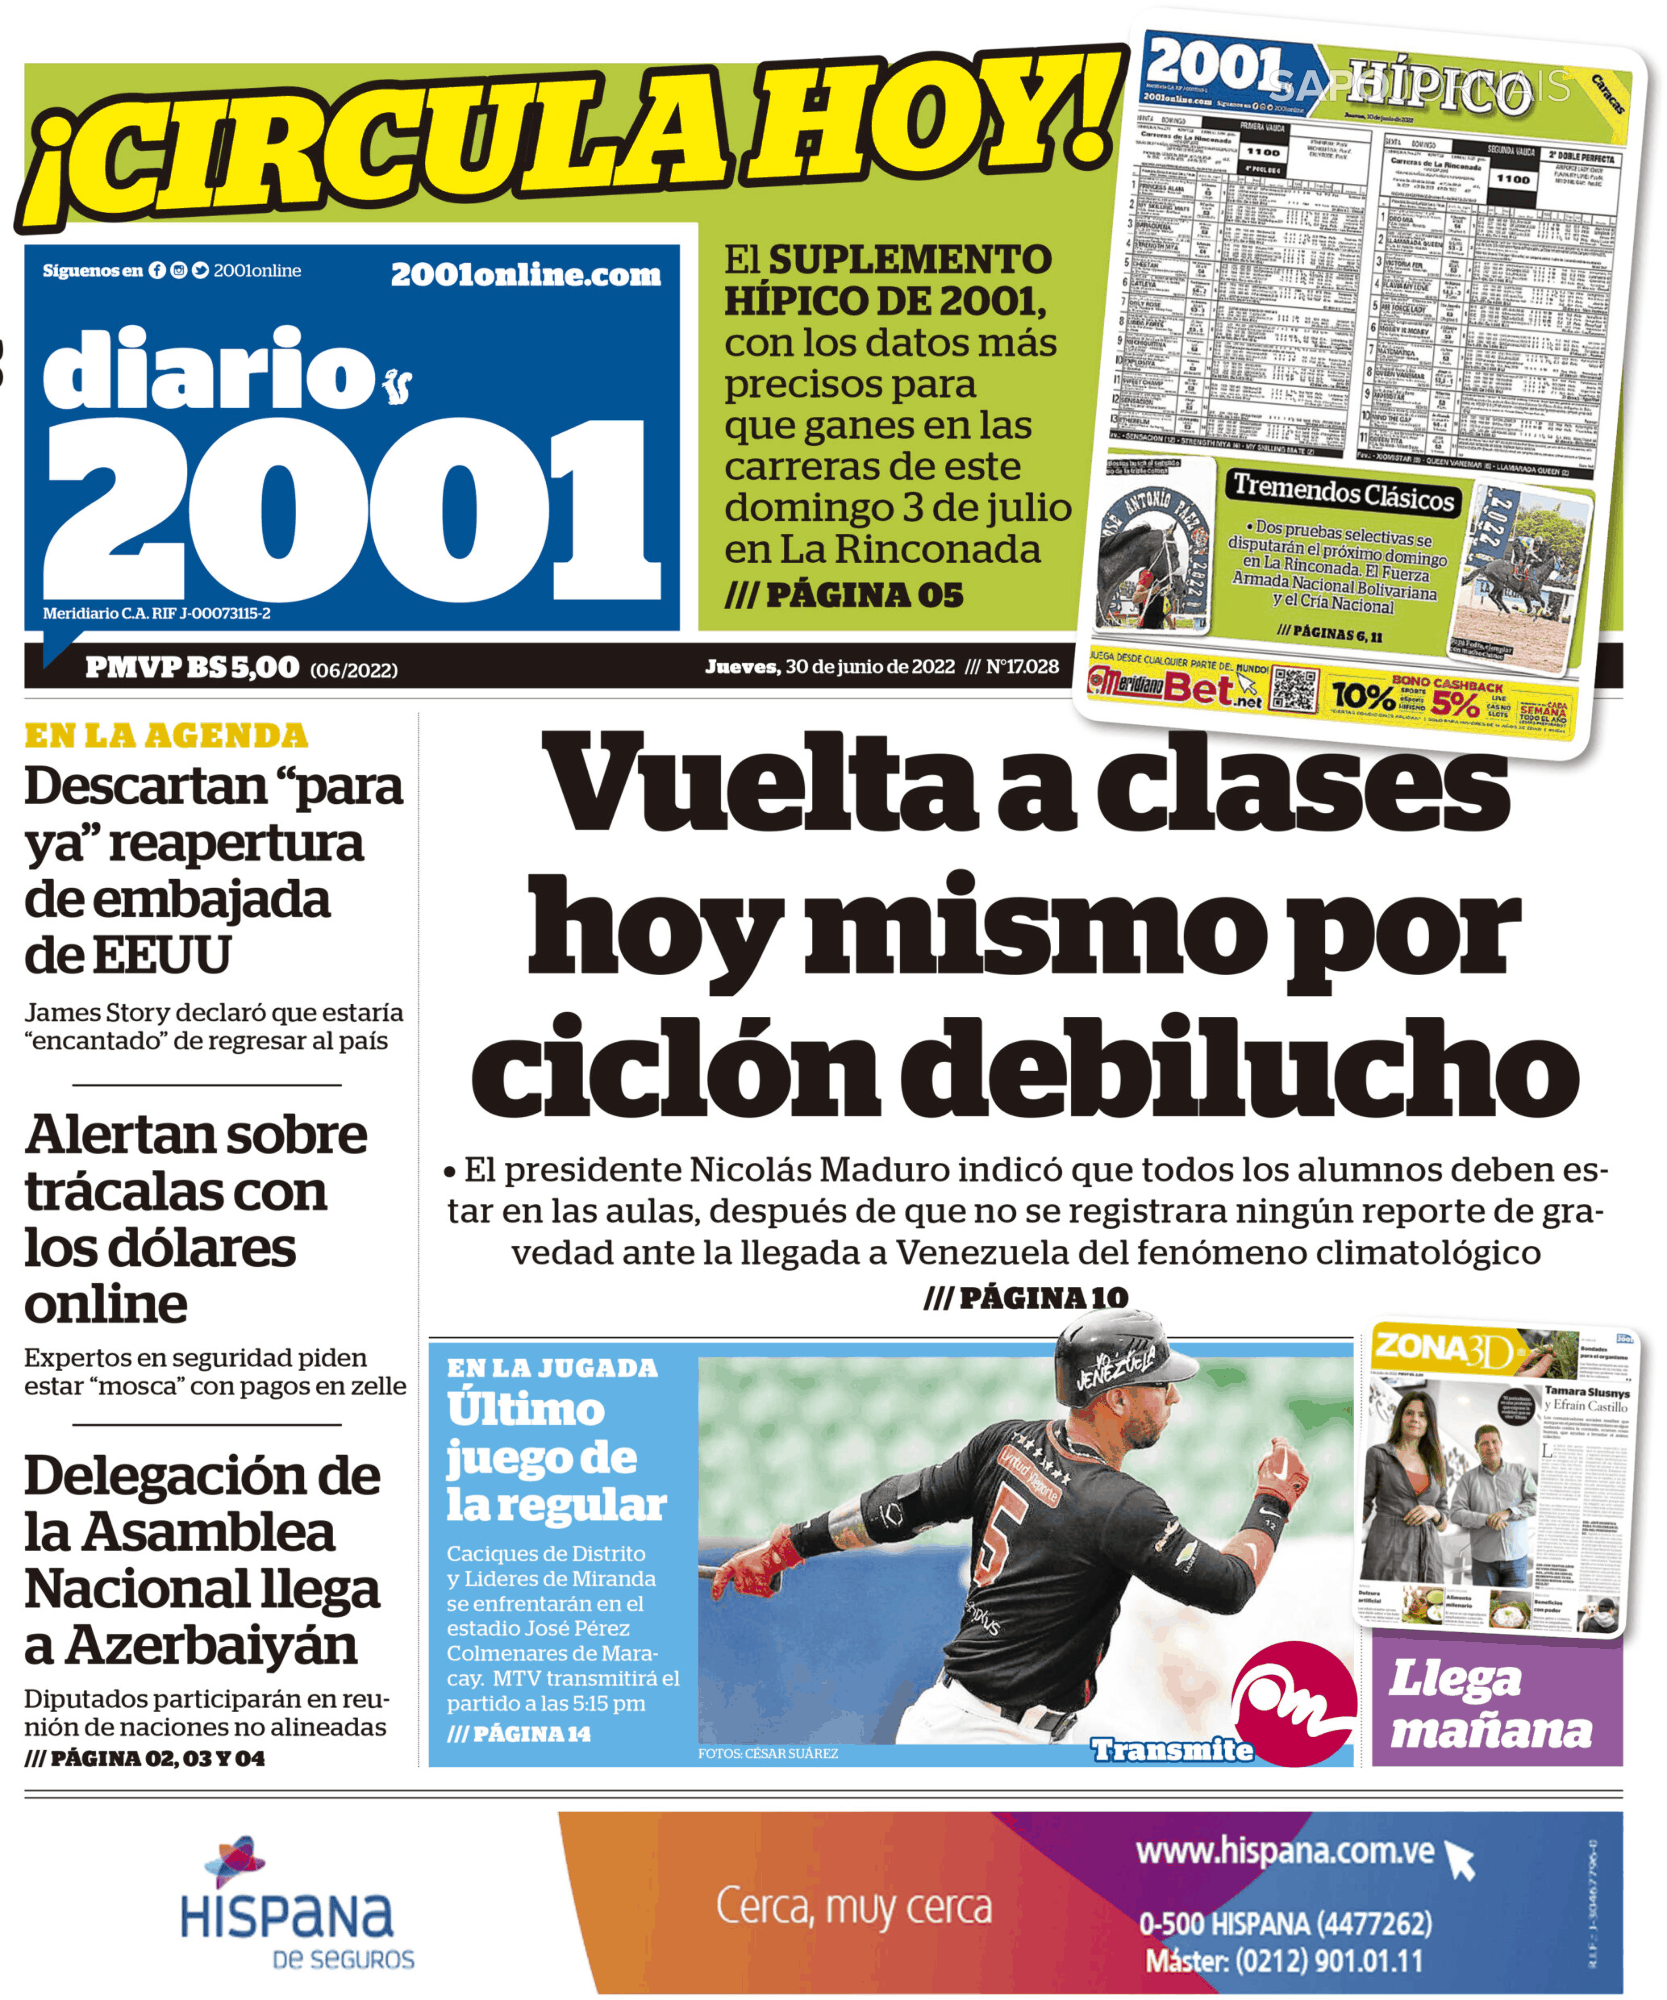 Diario 2001